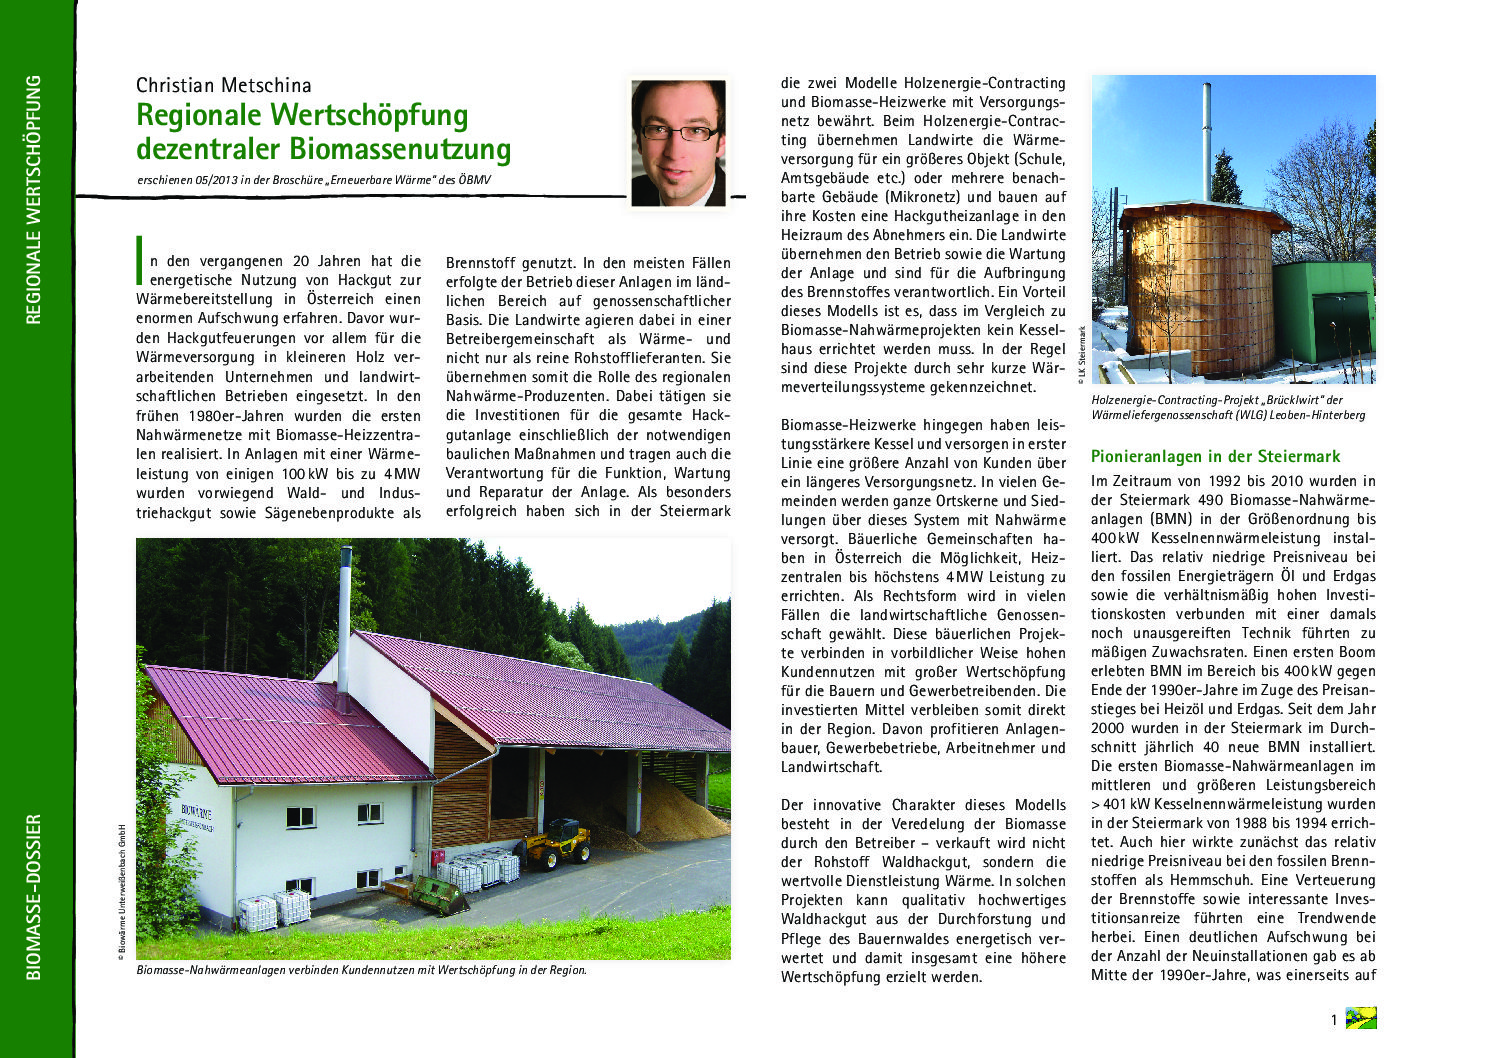 Regionale Wertschöpfung dezentraler Biomassenutzung